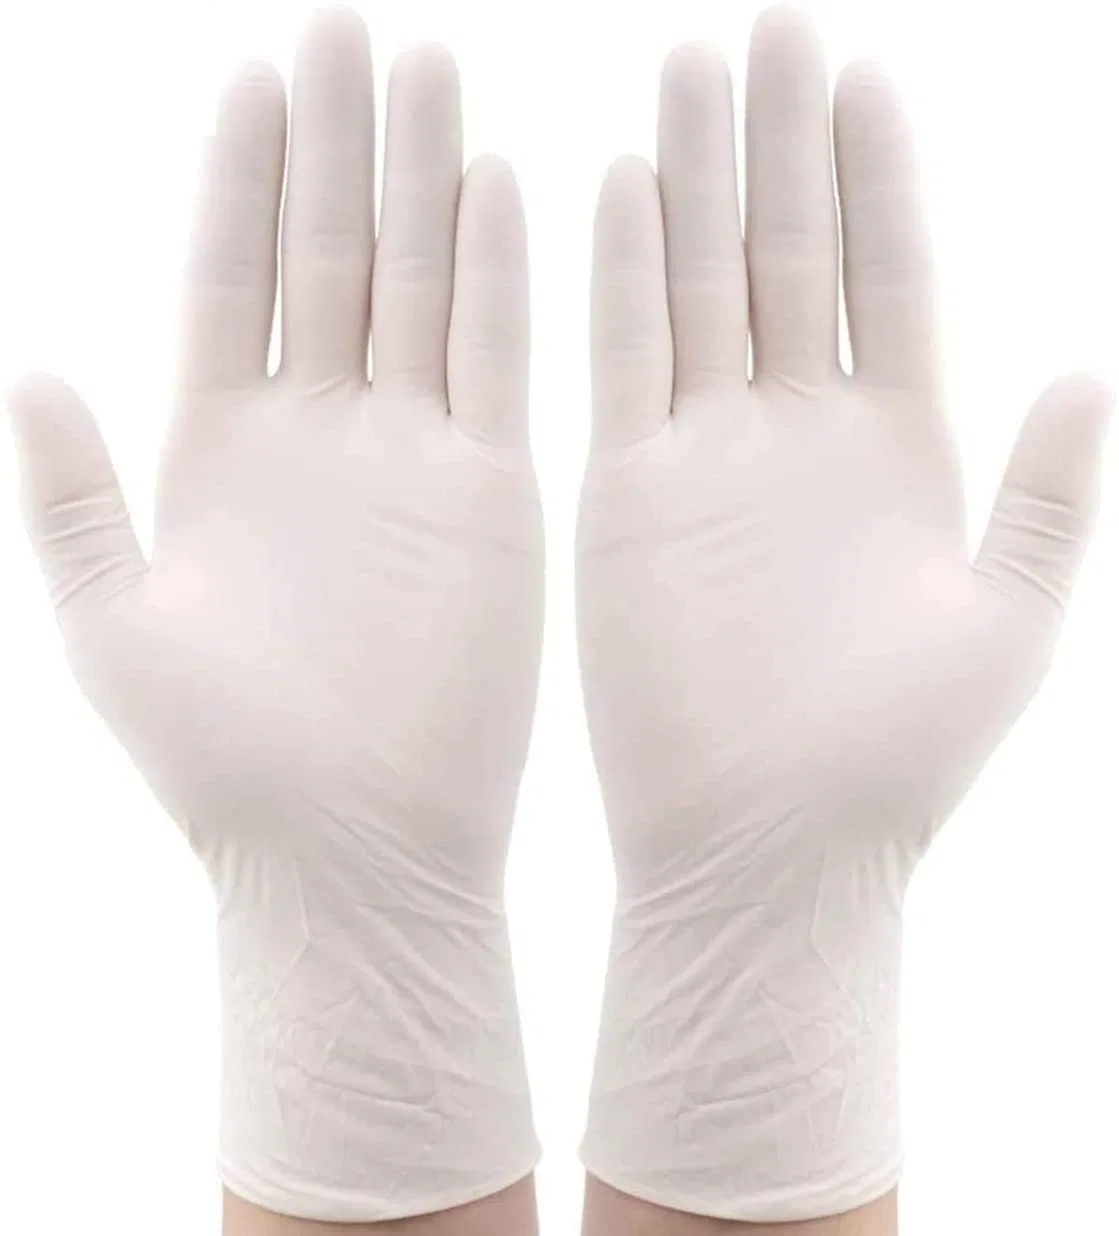 Siny Горячая продажа одноразовая медицинская поставка гладкая Pockмаркированные стерильные хирургические Клиника Парамедийные перчатки